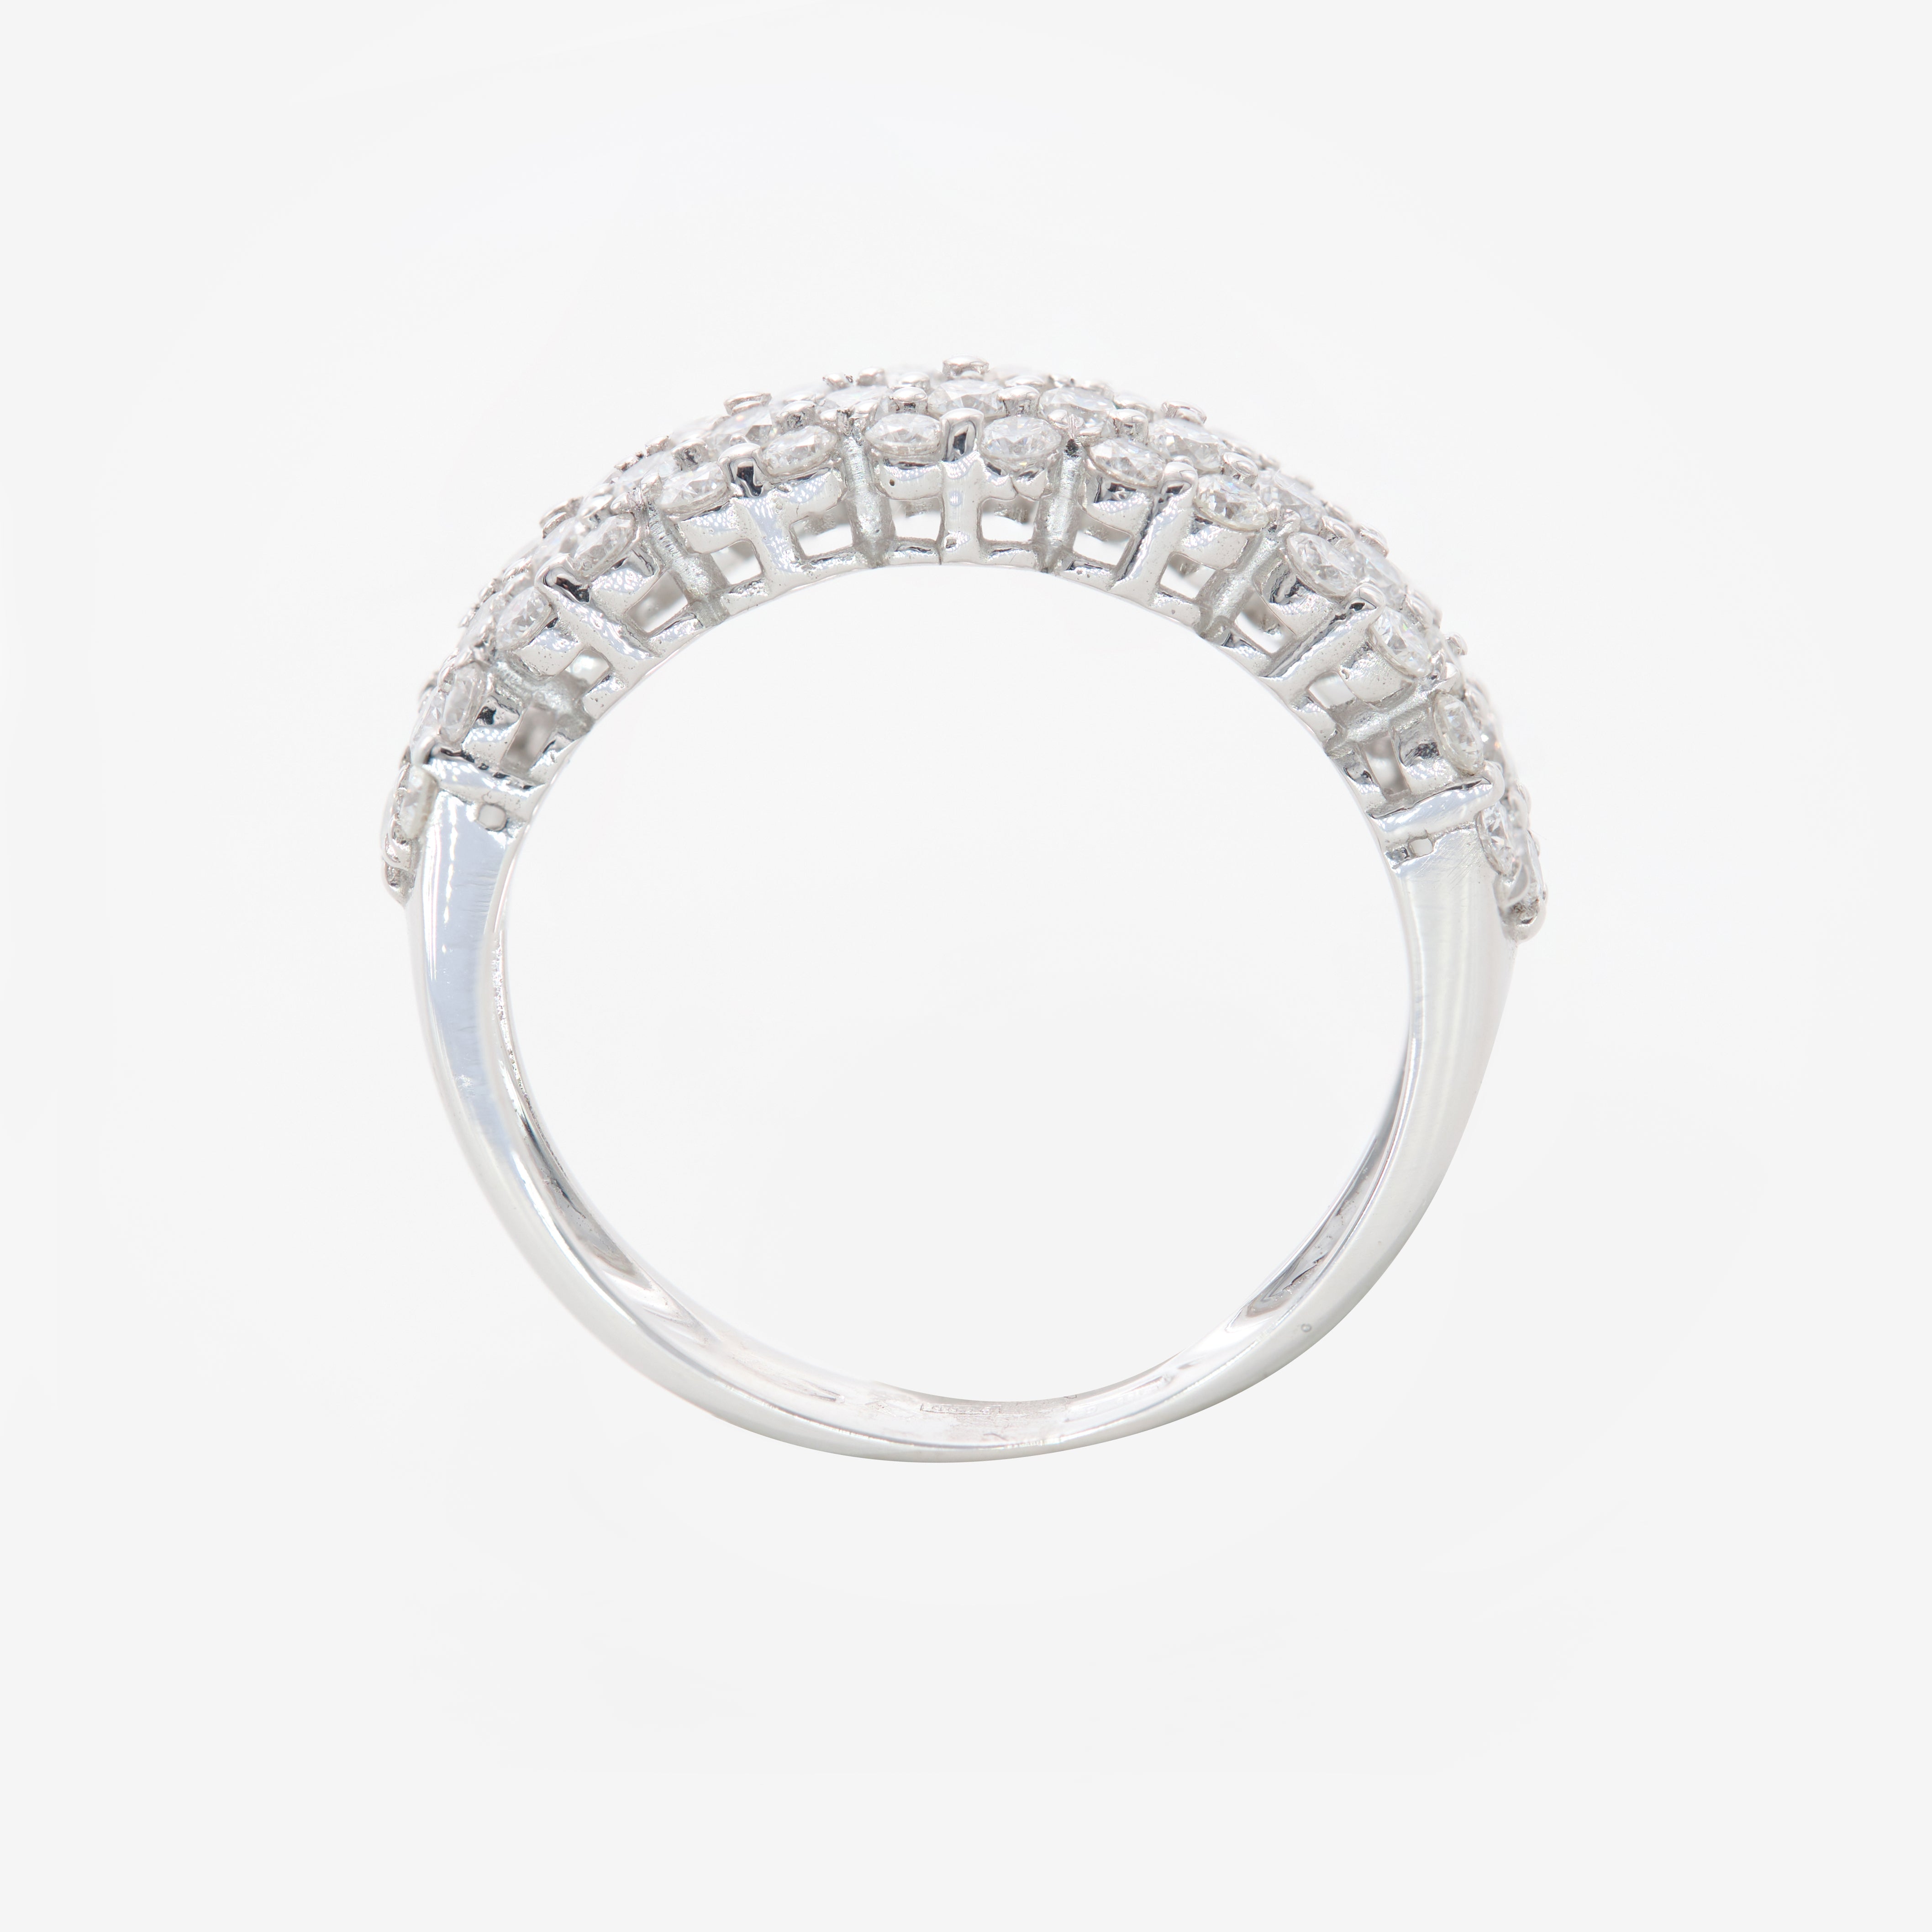 Iris ring with diamonds